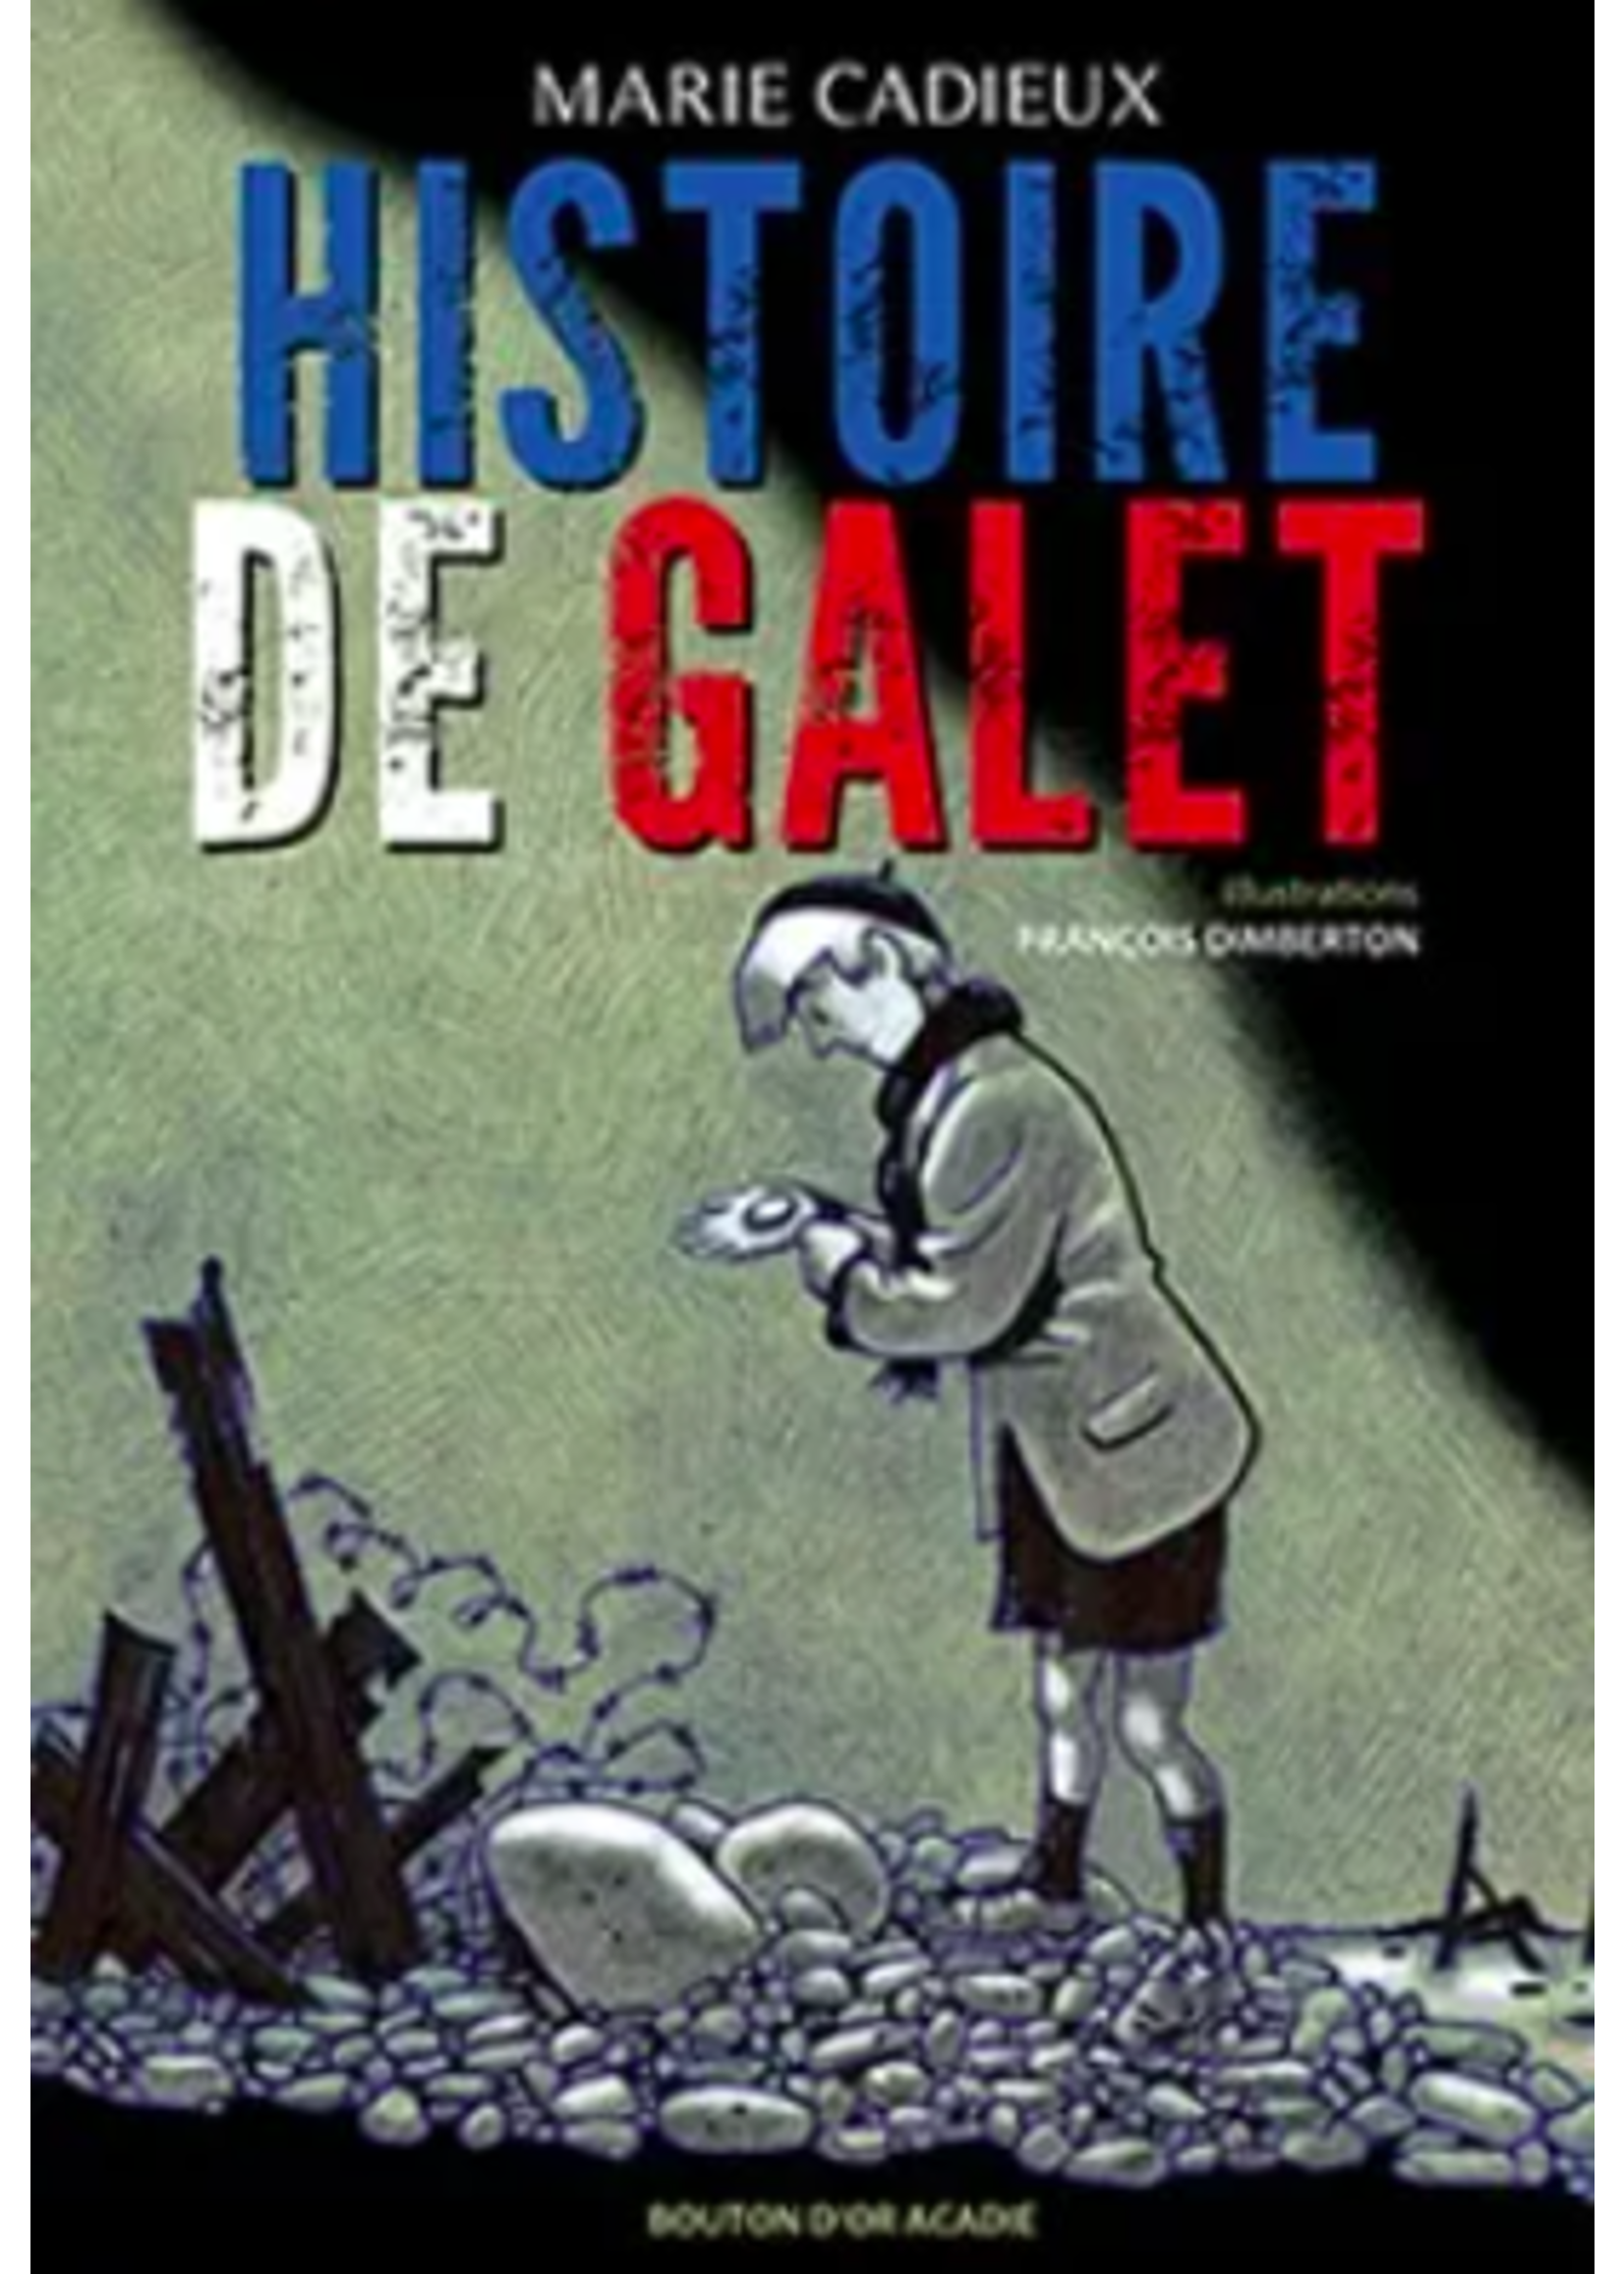 Histoire de Galet by Marie Cadieux